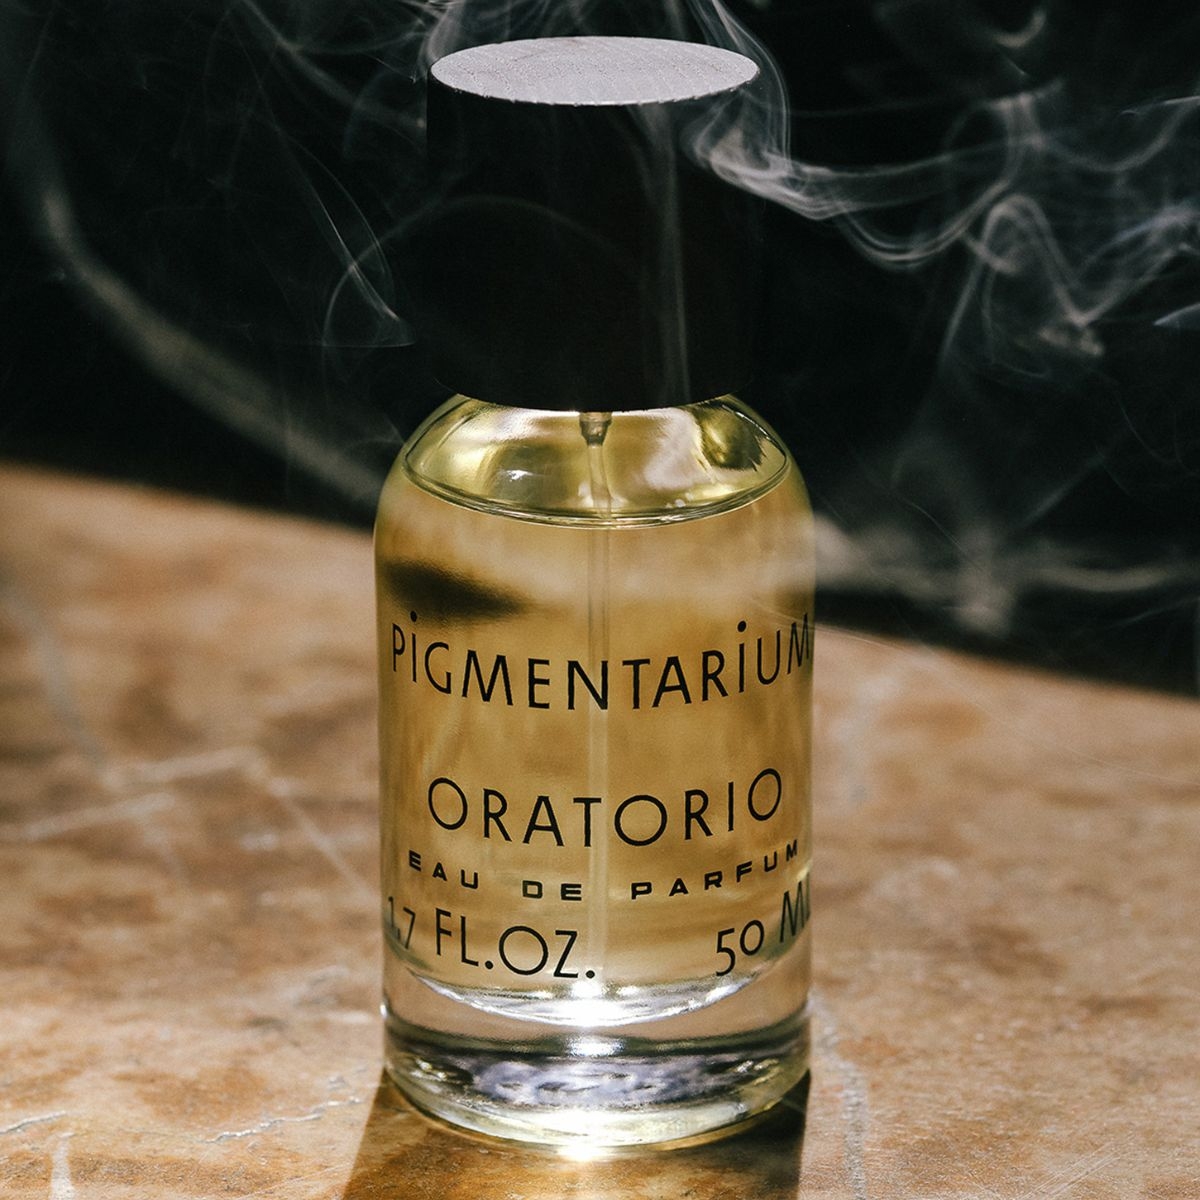 Image of Oratorio 50 ml eau de parfum by the perfume brand Pigmentarium